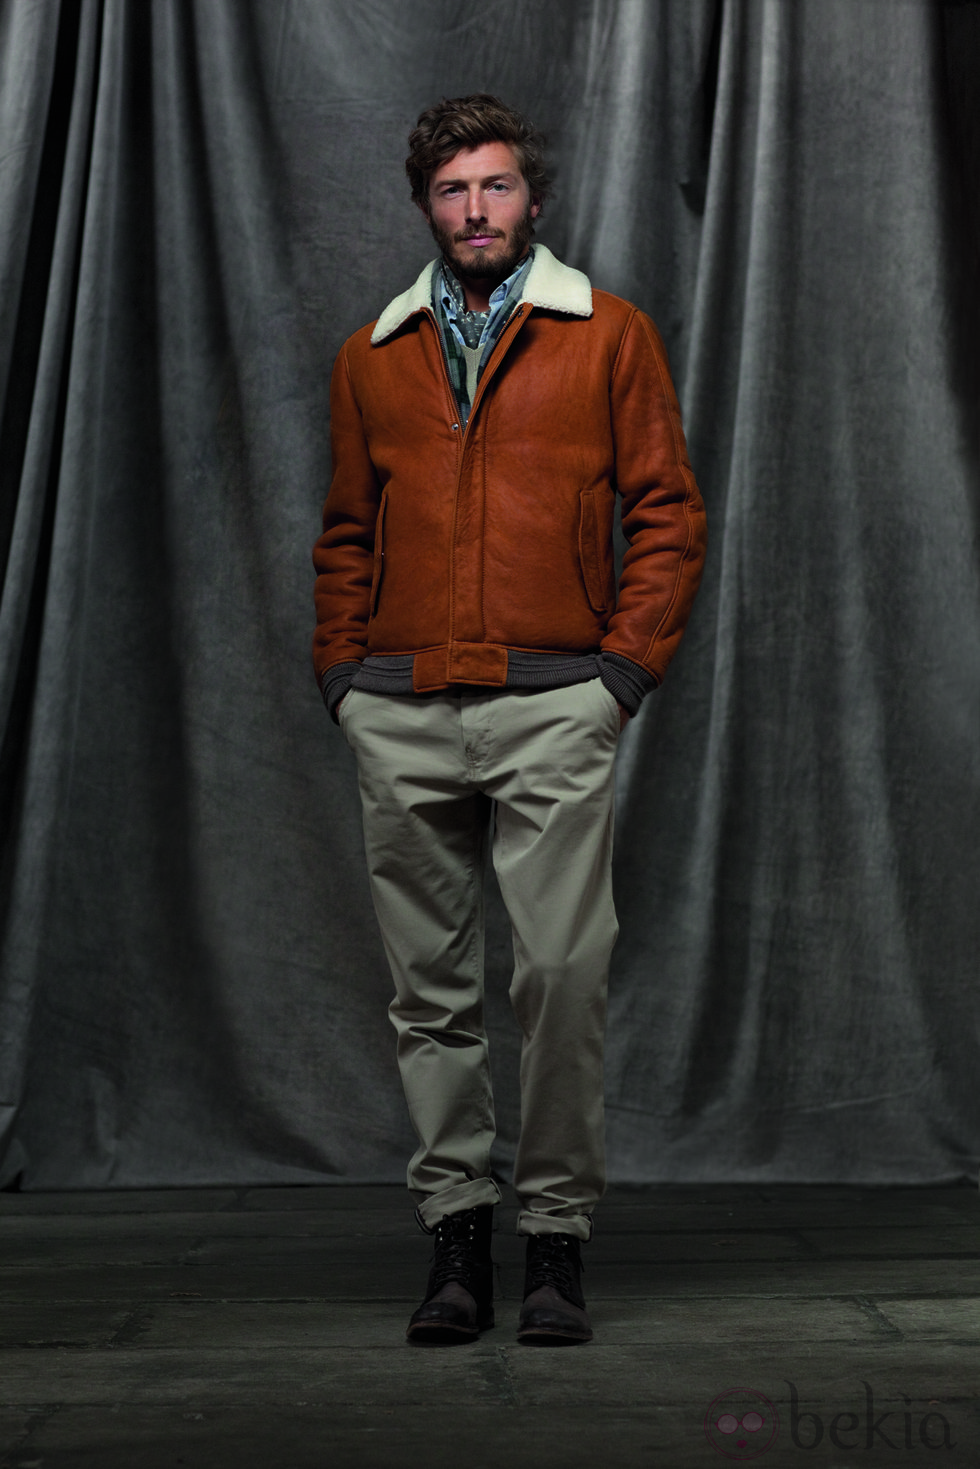 Cazadora marrón y pantalones beige de la colección otoño/invierno 2012/2013 de Chevignon